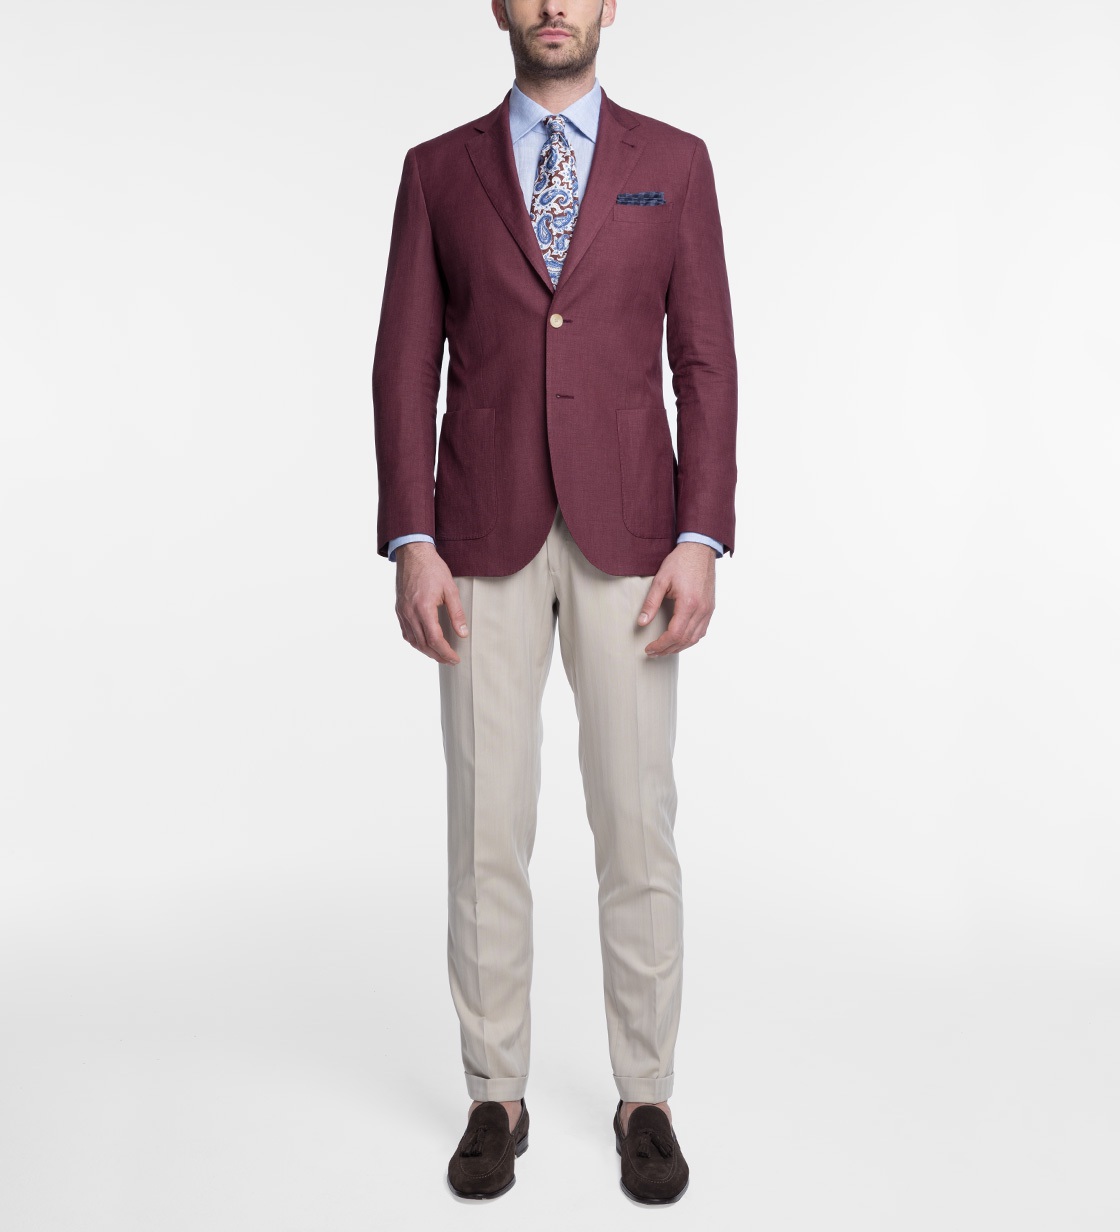 Broken suit: burgundy jacket and beige pants